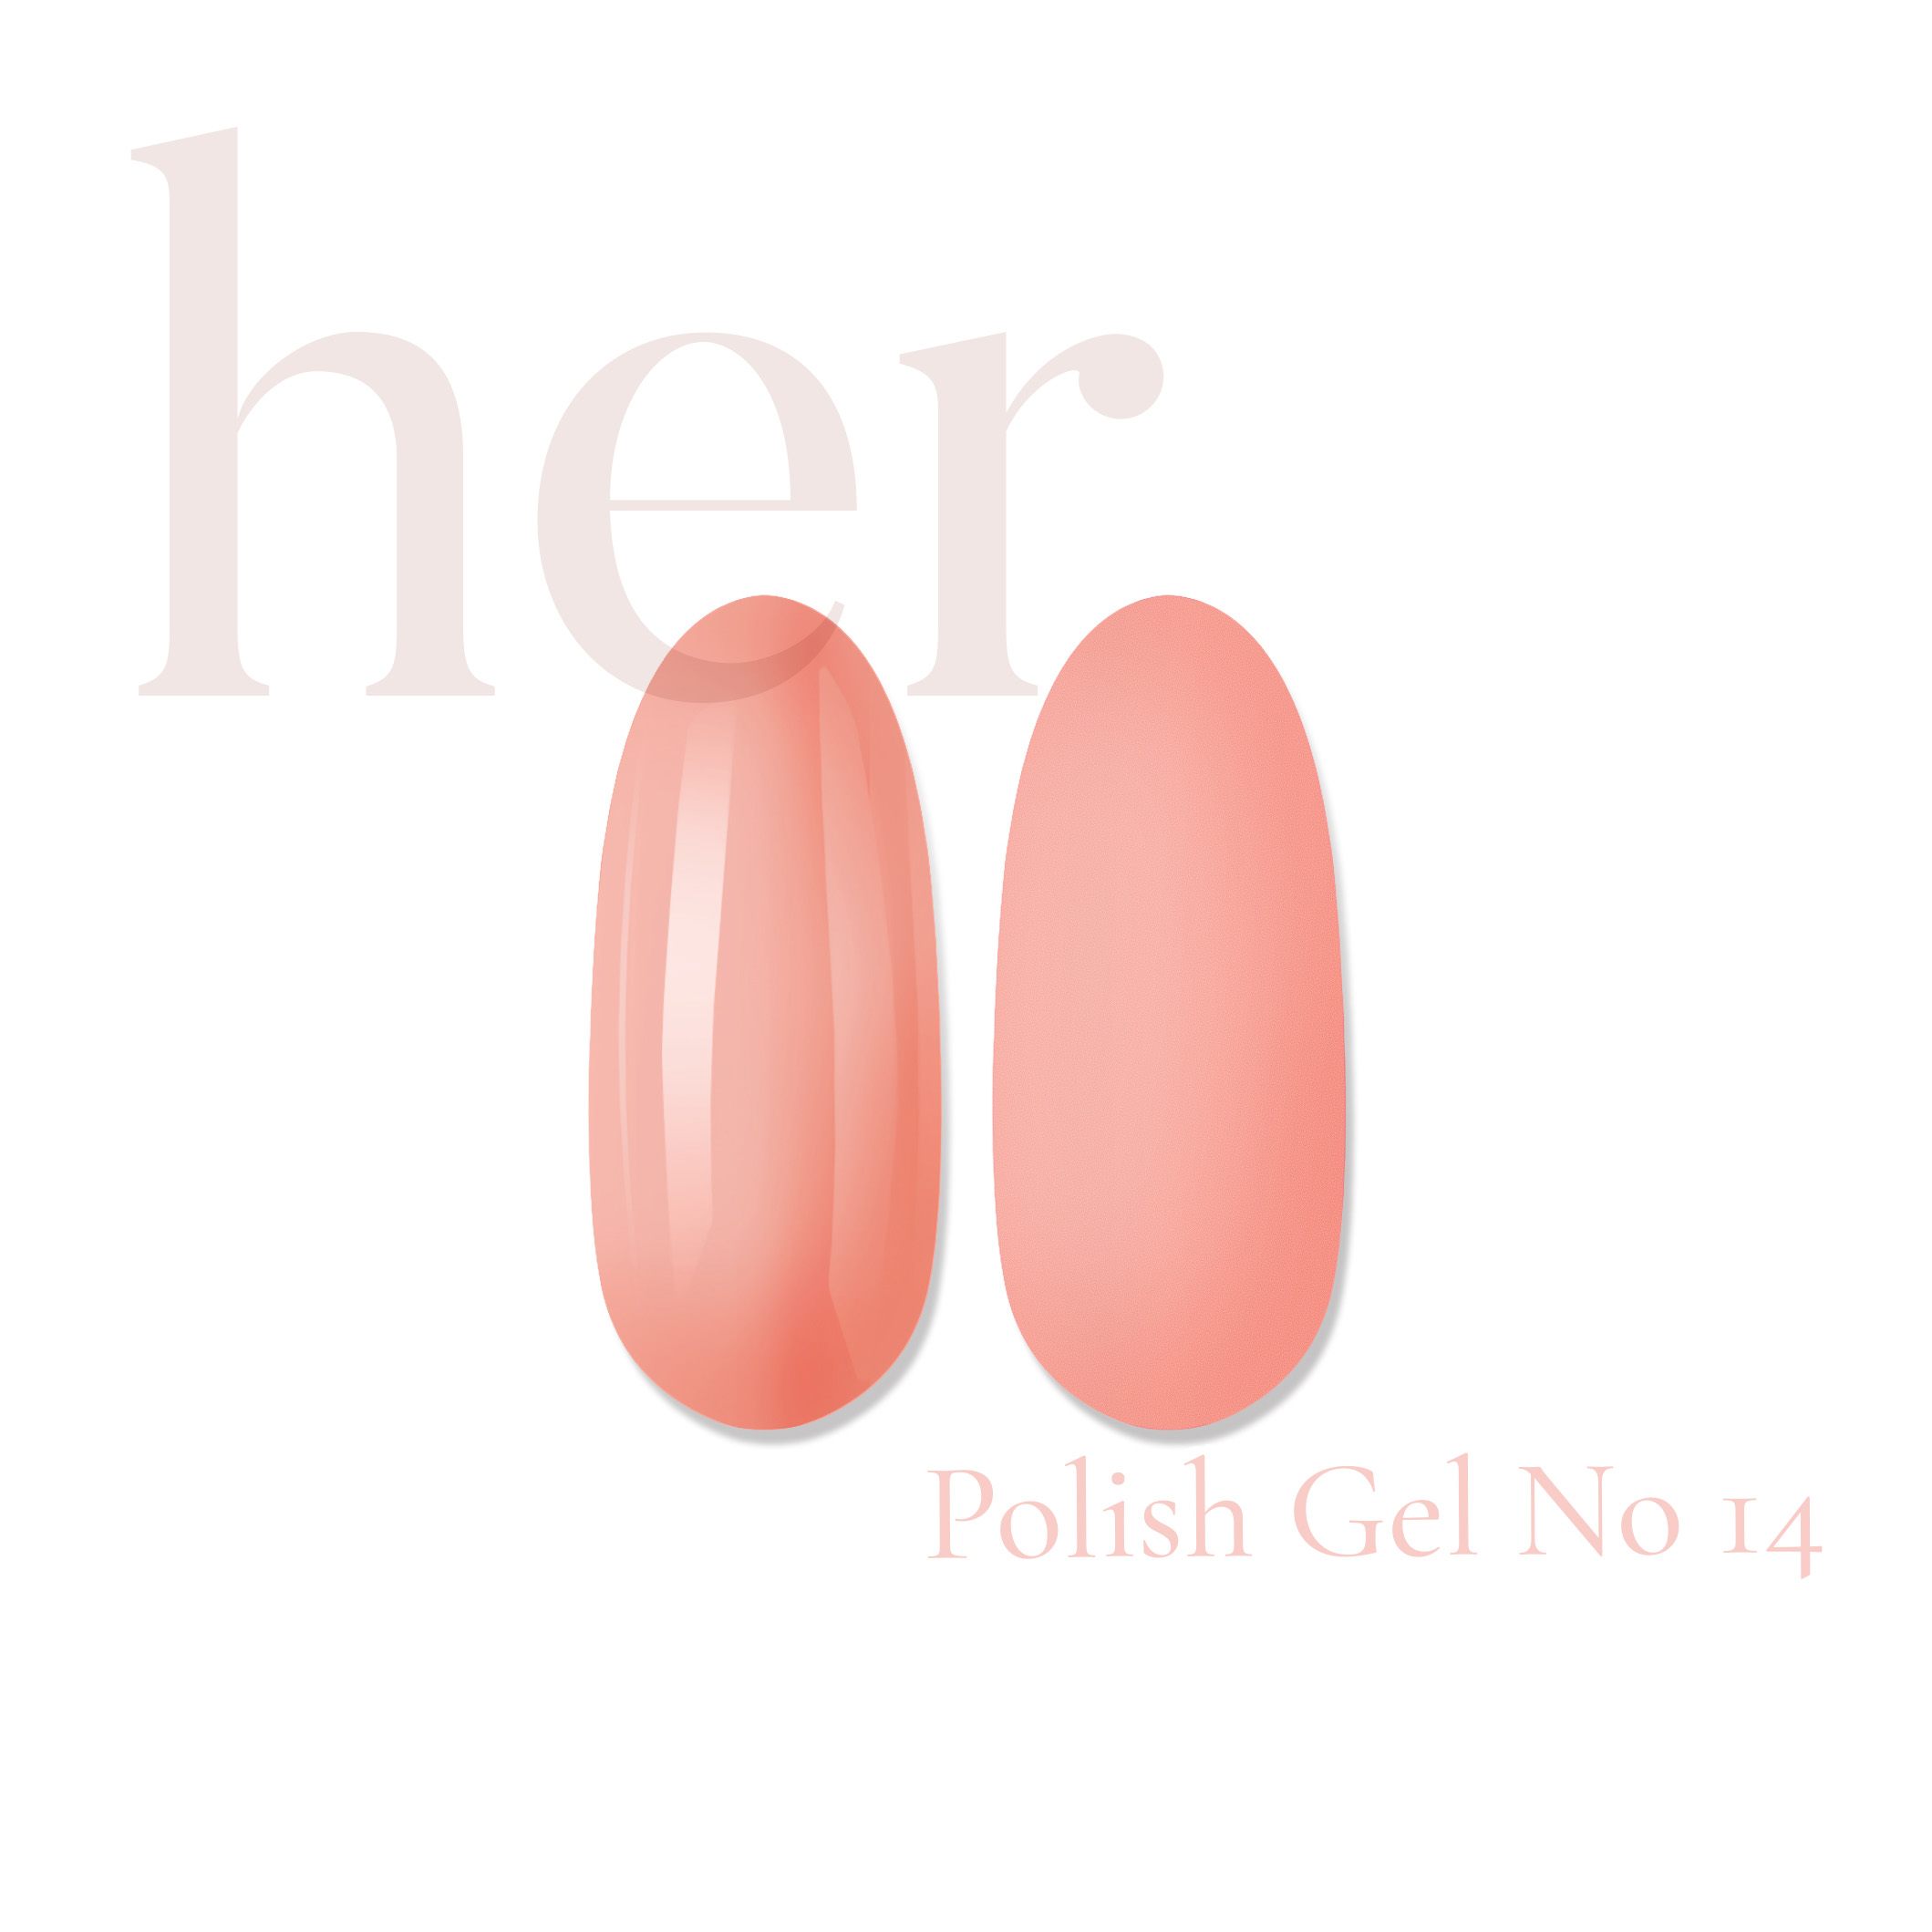 Polish Gel –  No 14